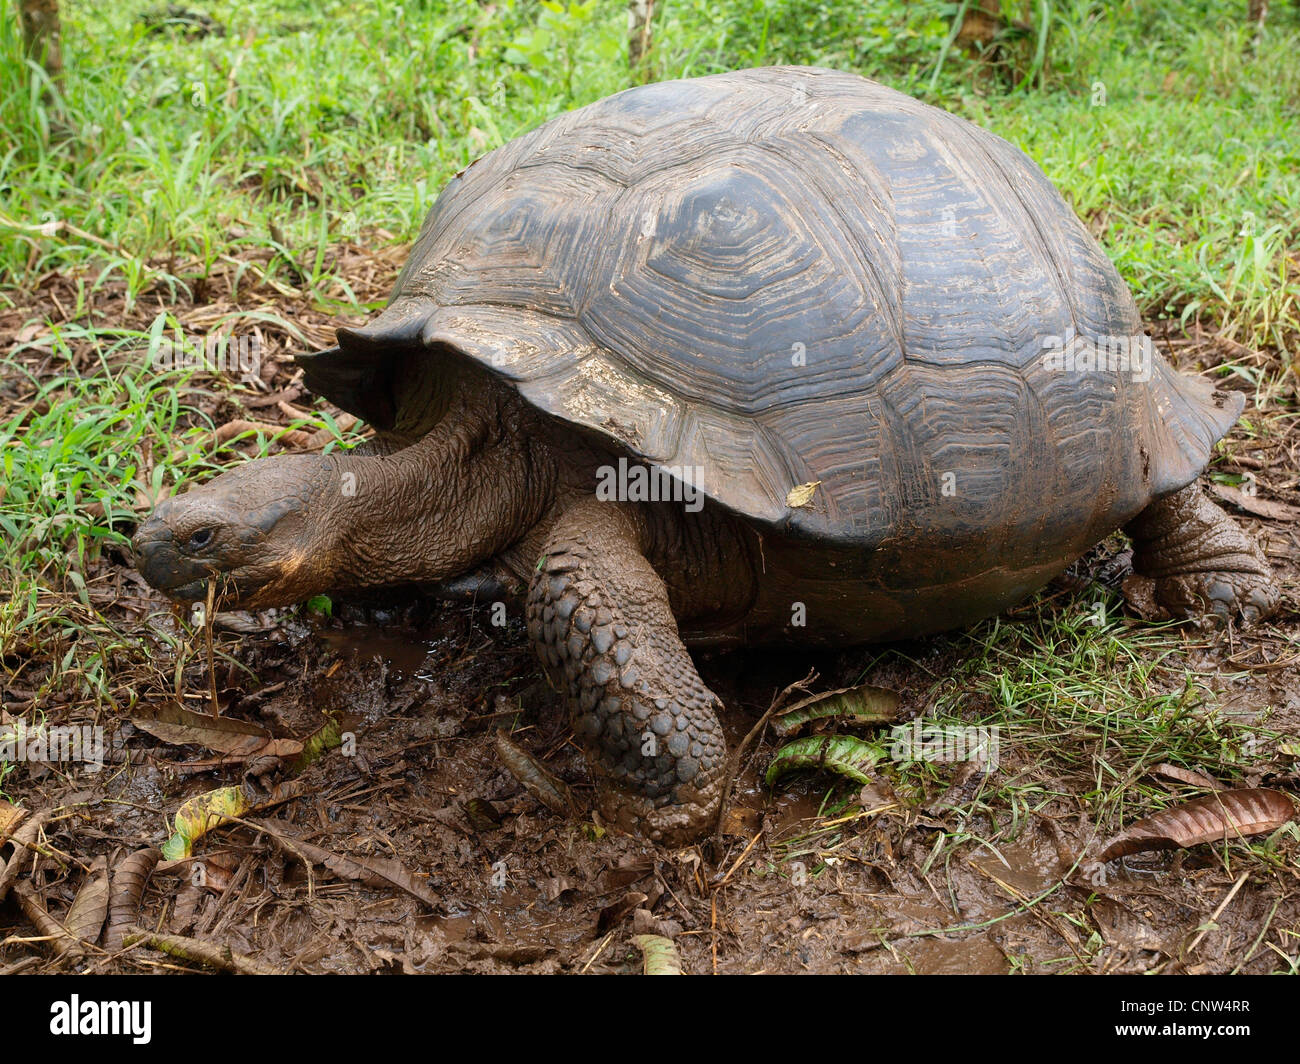 Galapagos giant tortoise (Geochelone elephantopus, Geochelone nigra, Testudo elephantopus, Chelonoides elephantopus), between plants, Ecuador, Galapagos Islands Stock Photo